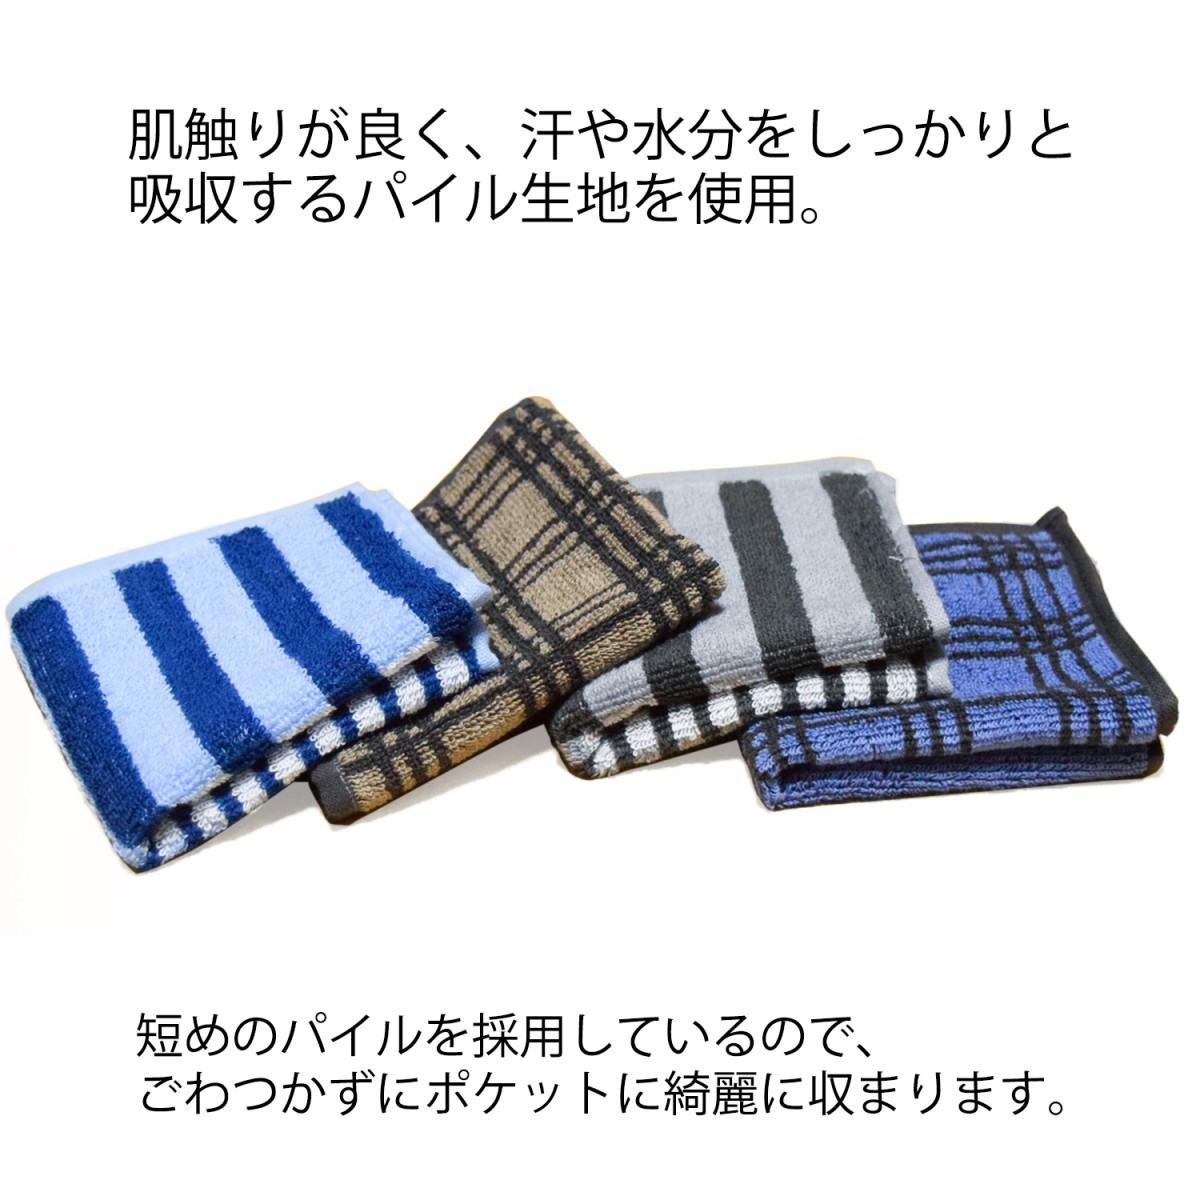  towel handkerchie men's cotton 100% 4 pieces set hand towel handkerchie present gift 